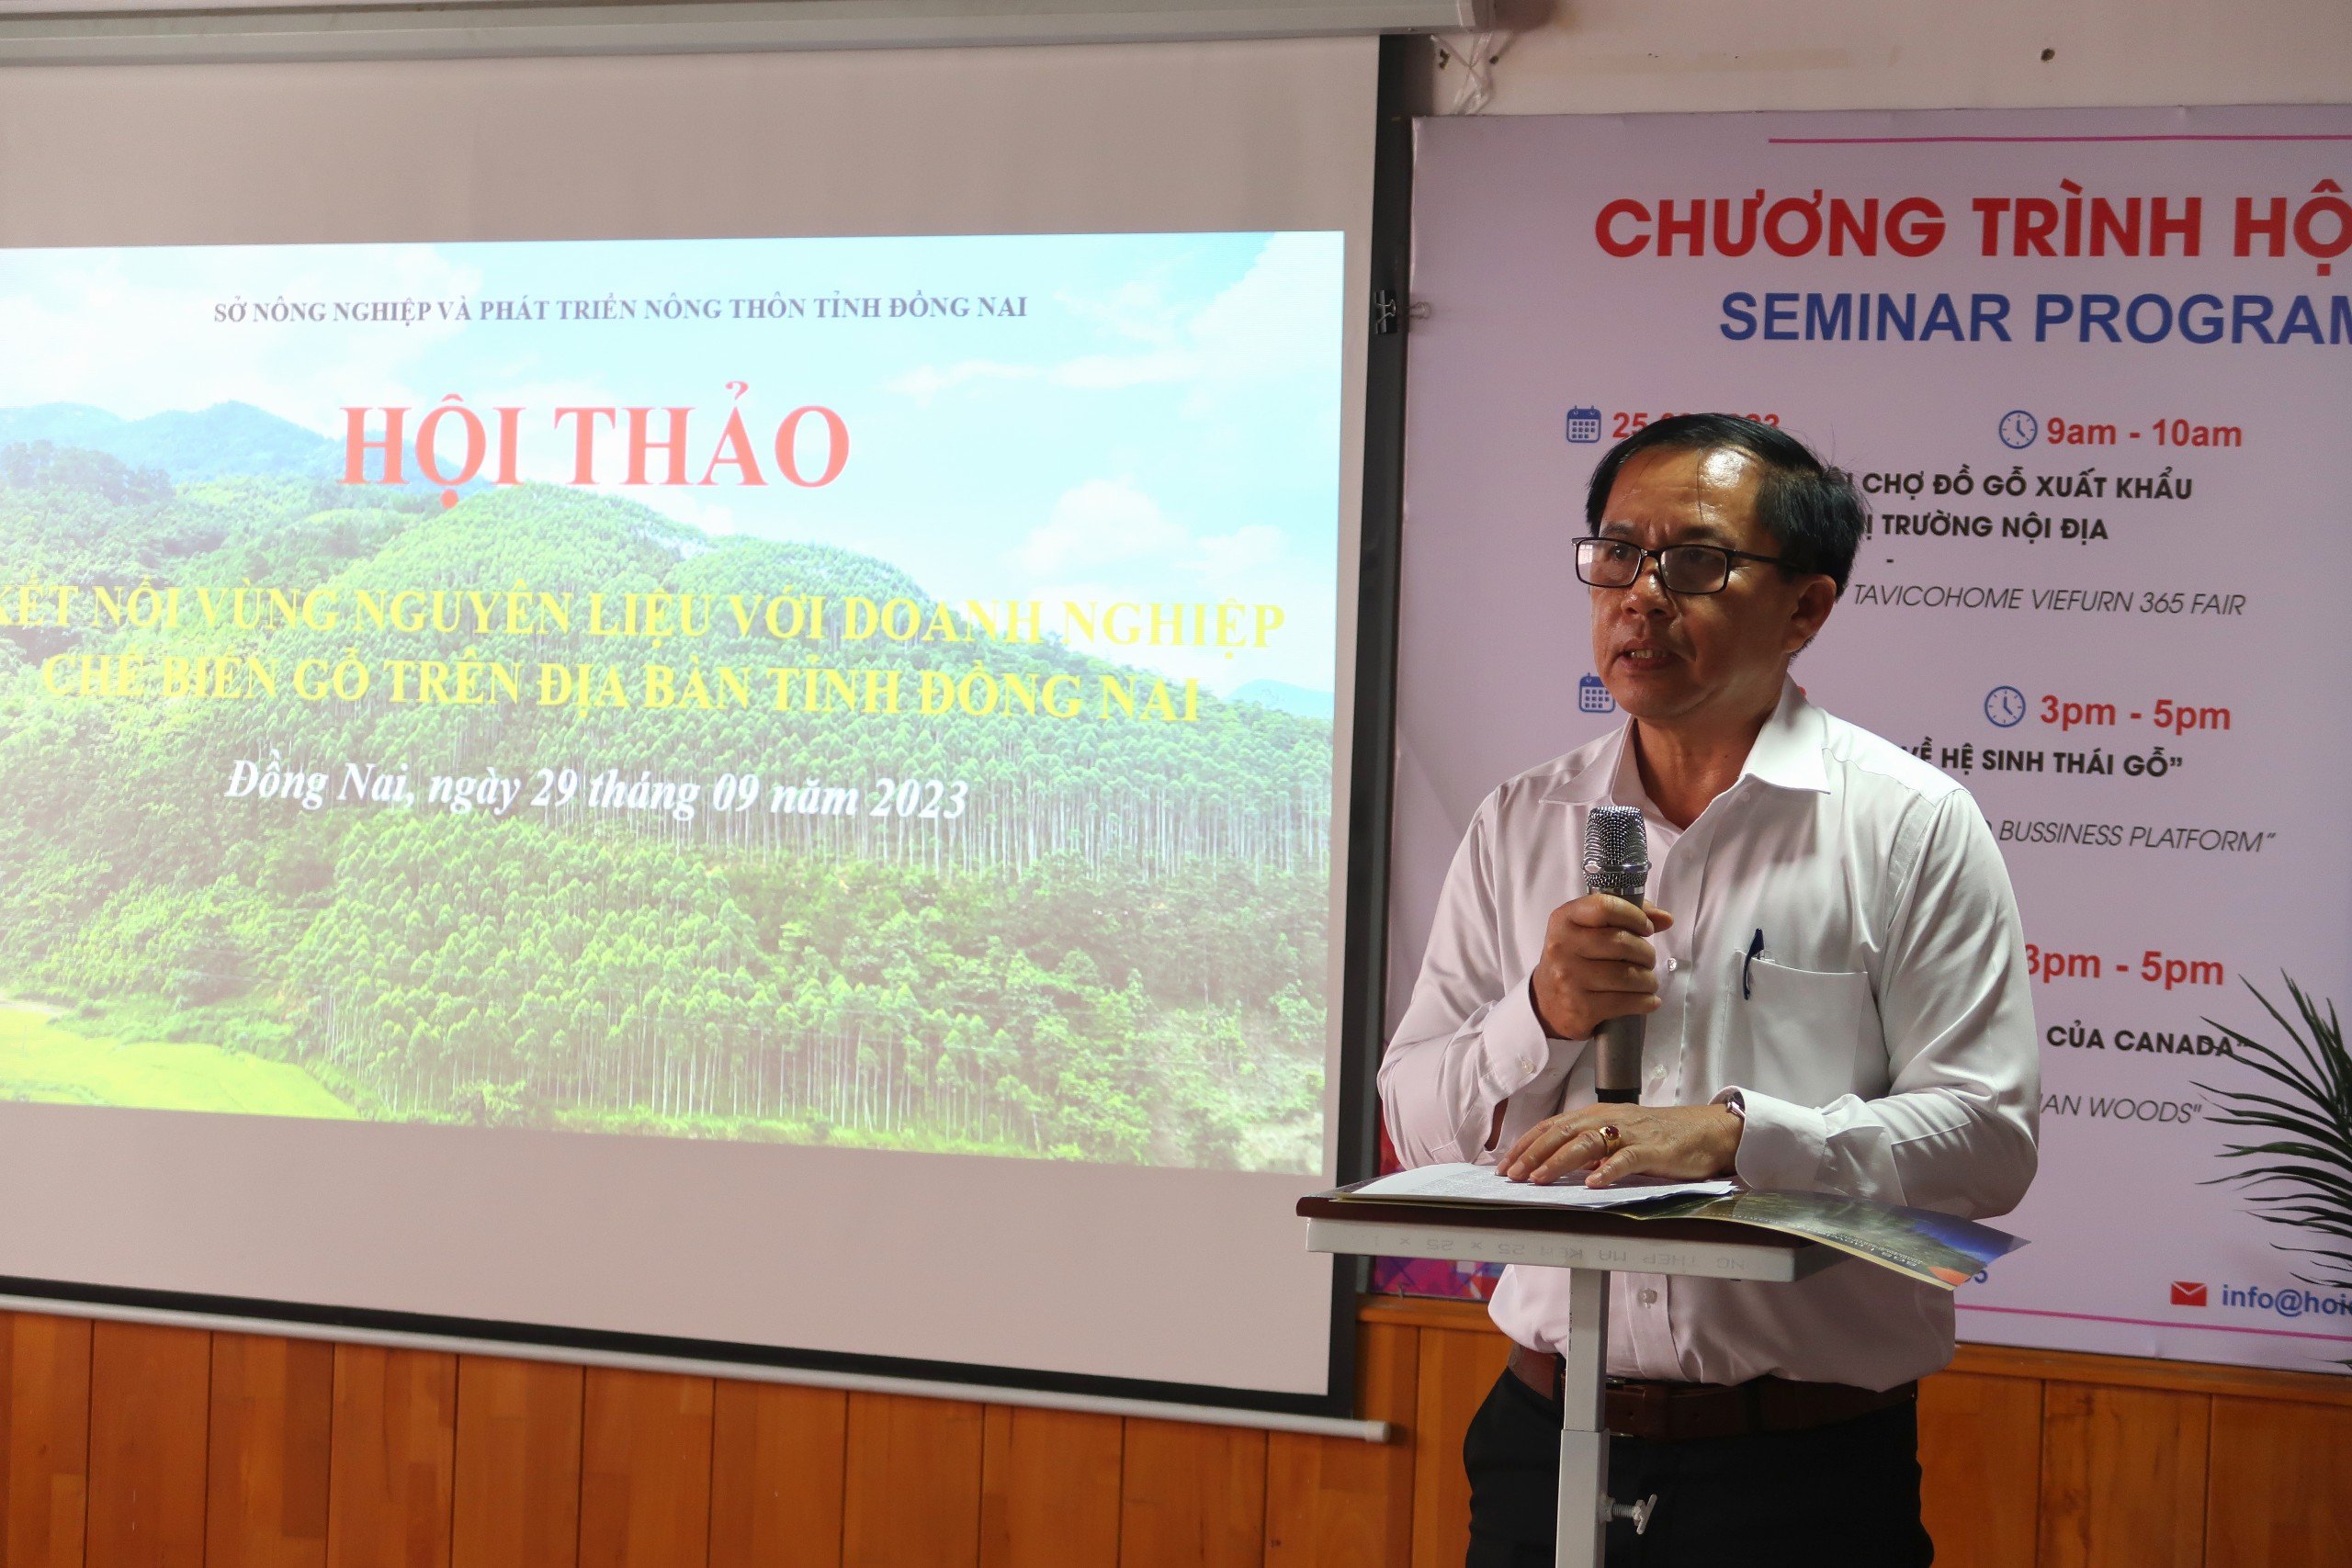 Hội thảo “Kết nối vùng nguyên liệu với Doanh nghiệp chế biến gỗ trên địa bàn tỉnh Đồng Nai”